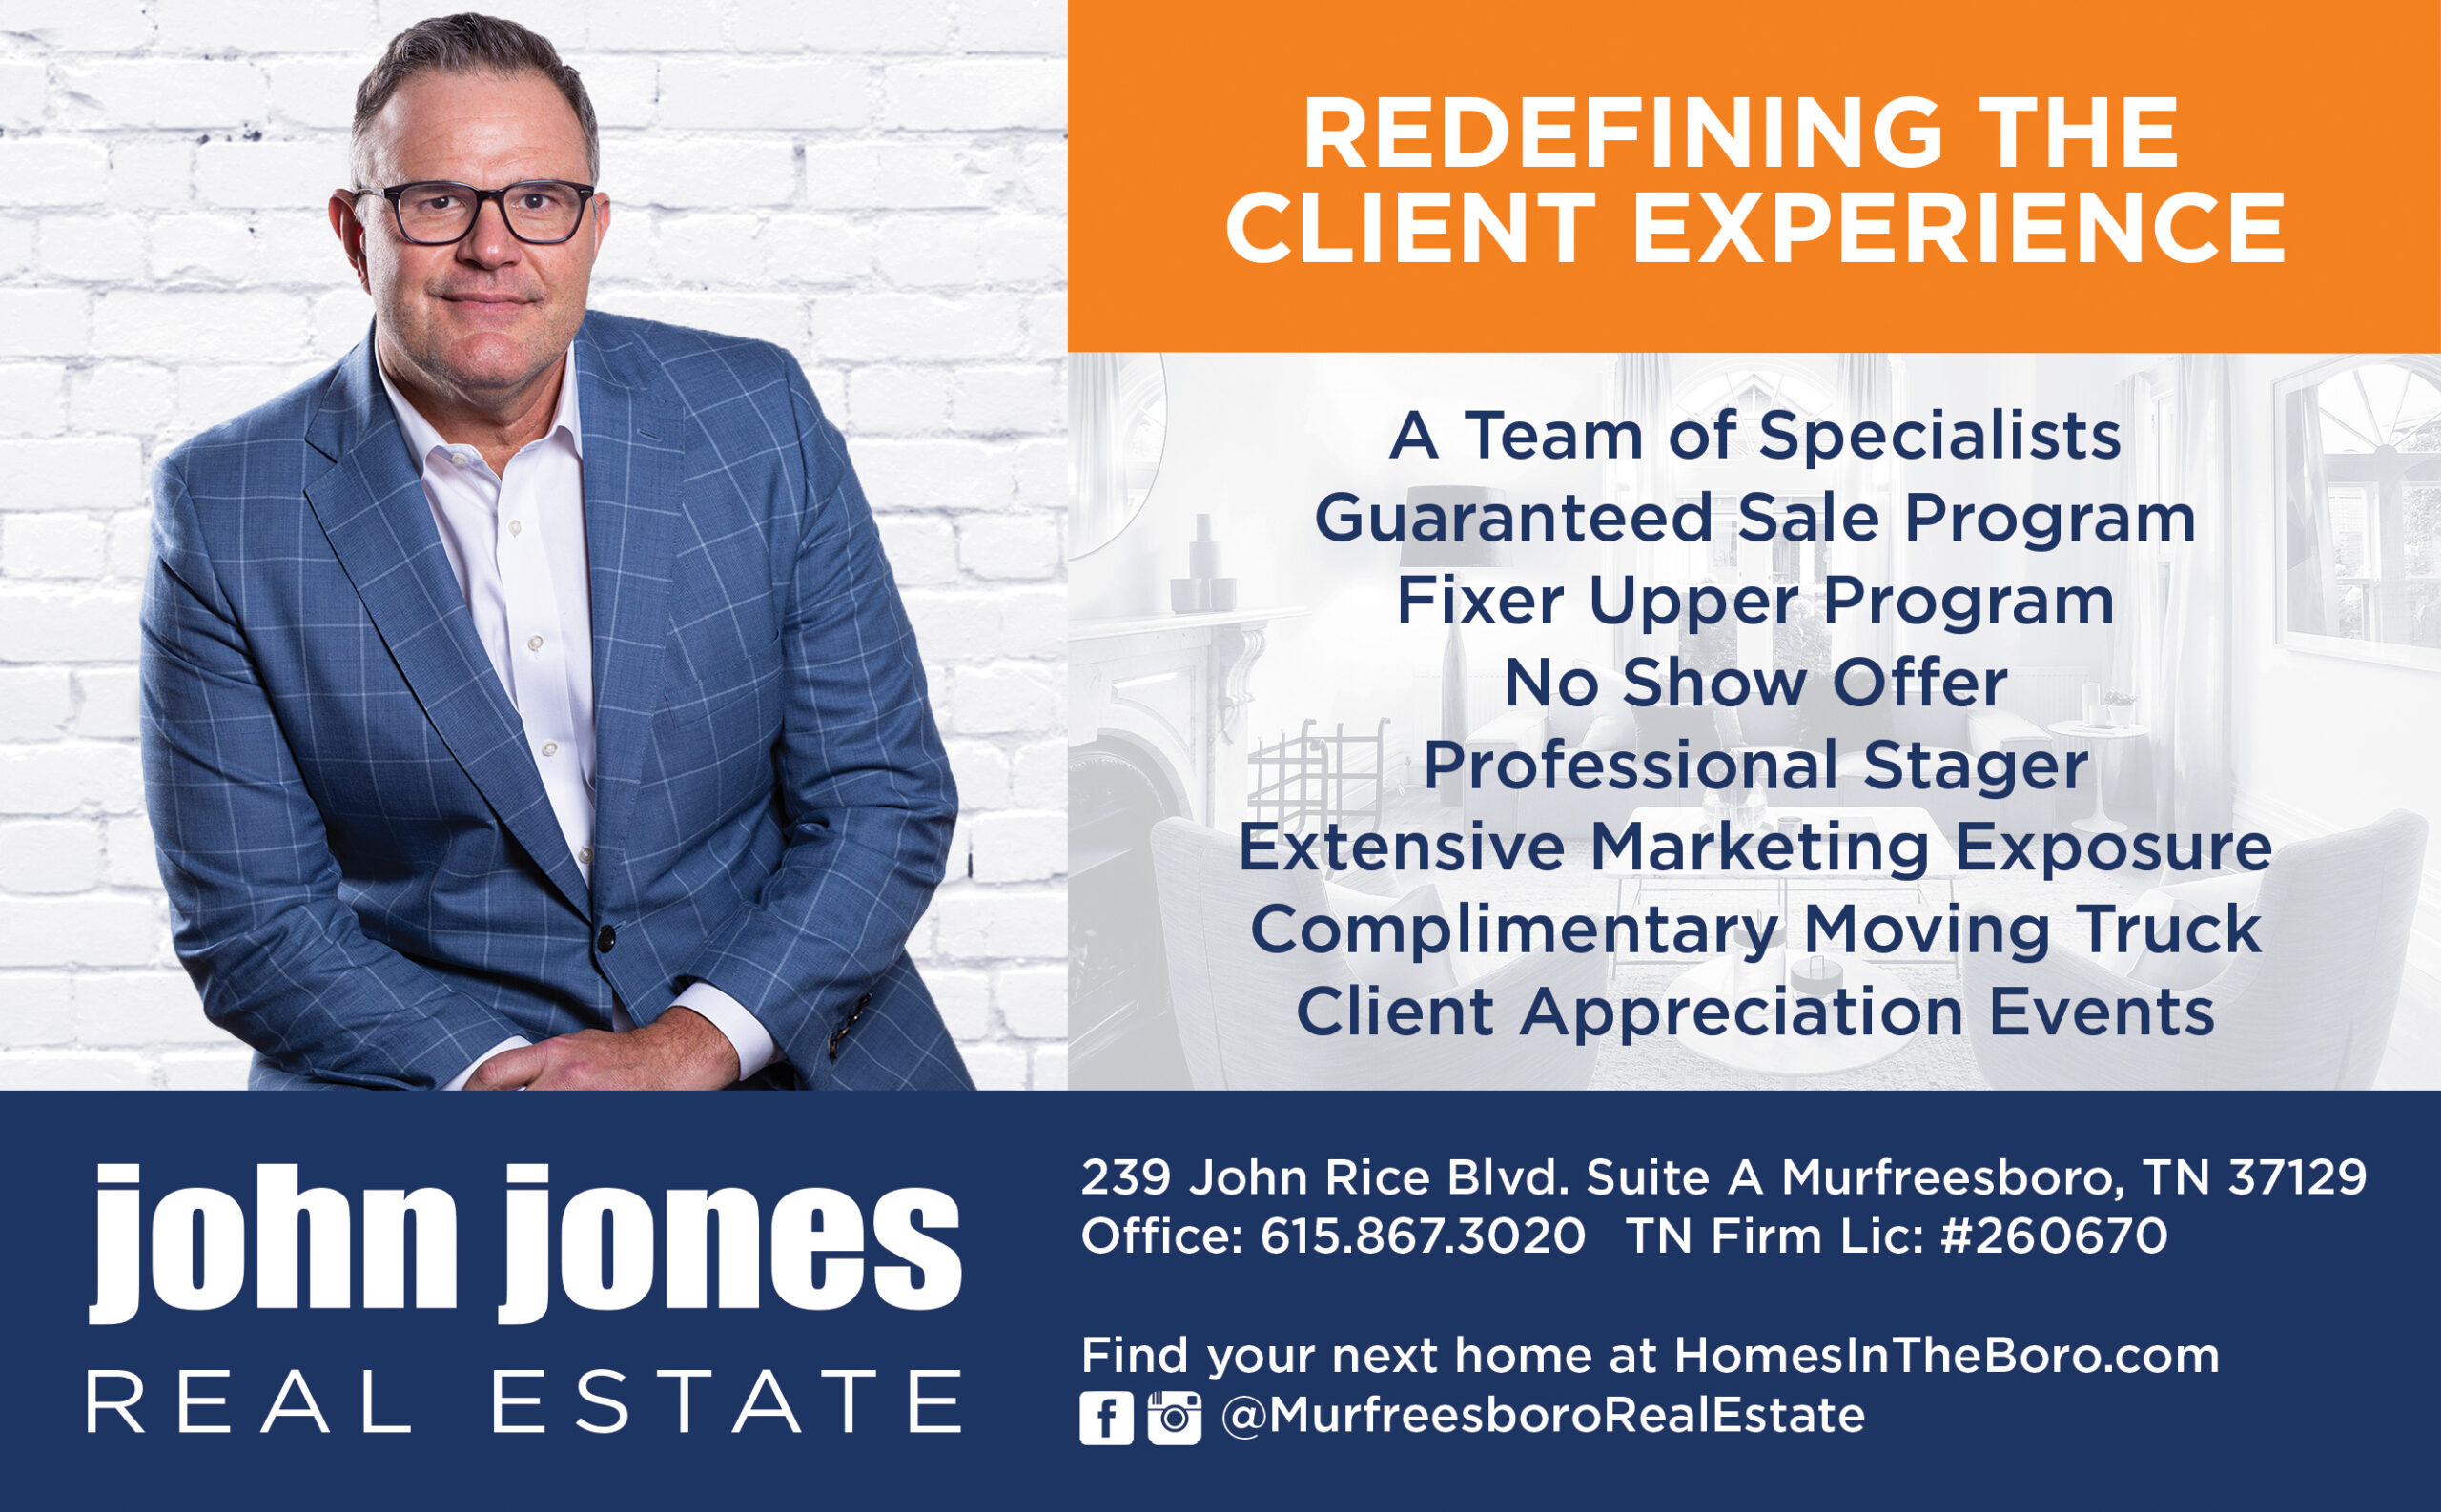 John jones real estate